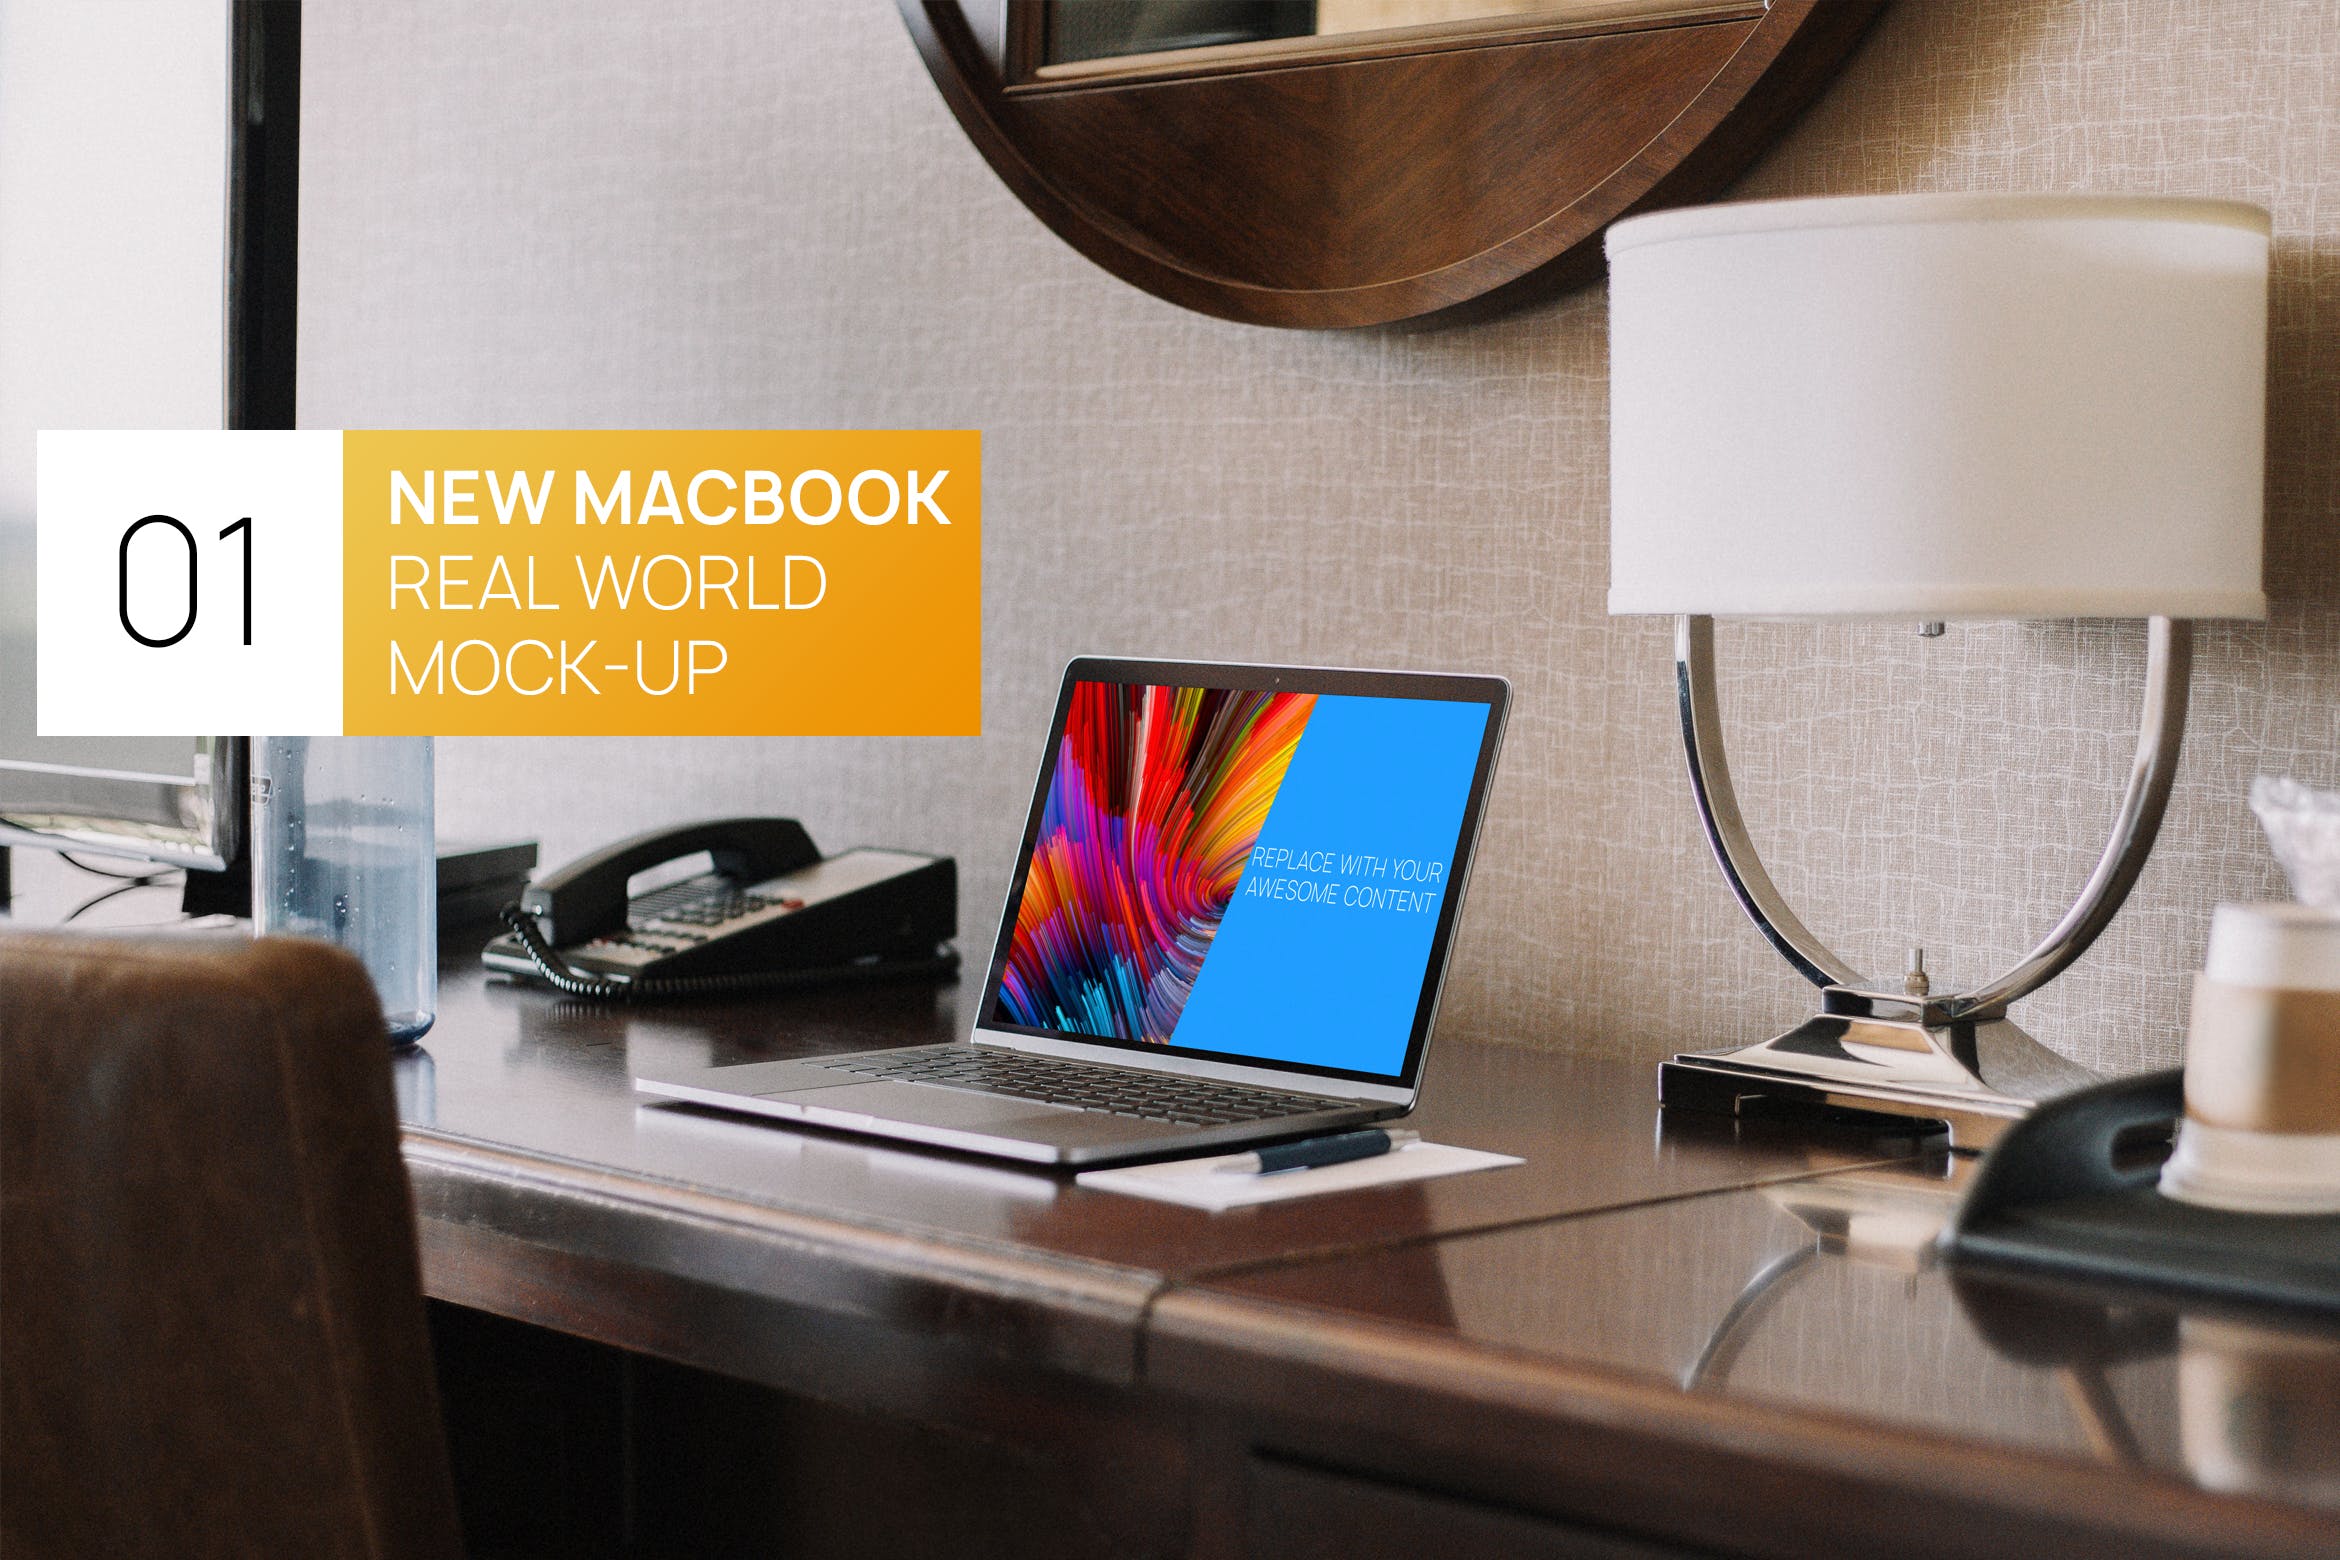 居家卧室桌面场景13寸MacBook电脑非凡图库精选样机 New Macbook 13 Interior Real World Photo Mock-up插图